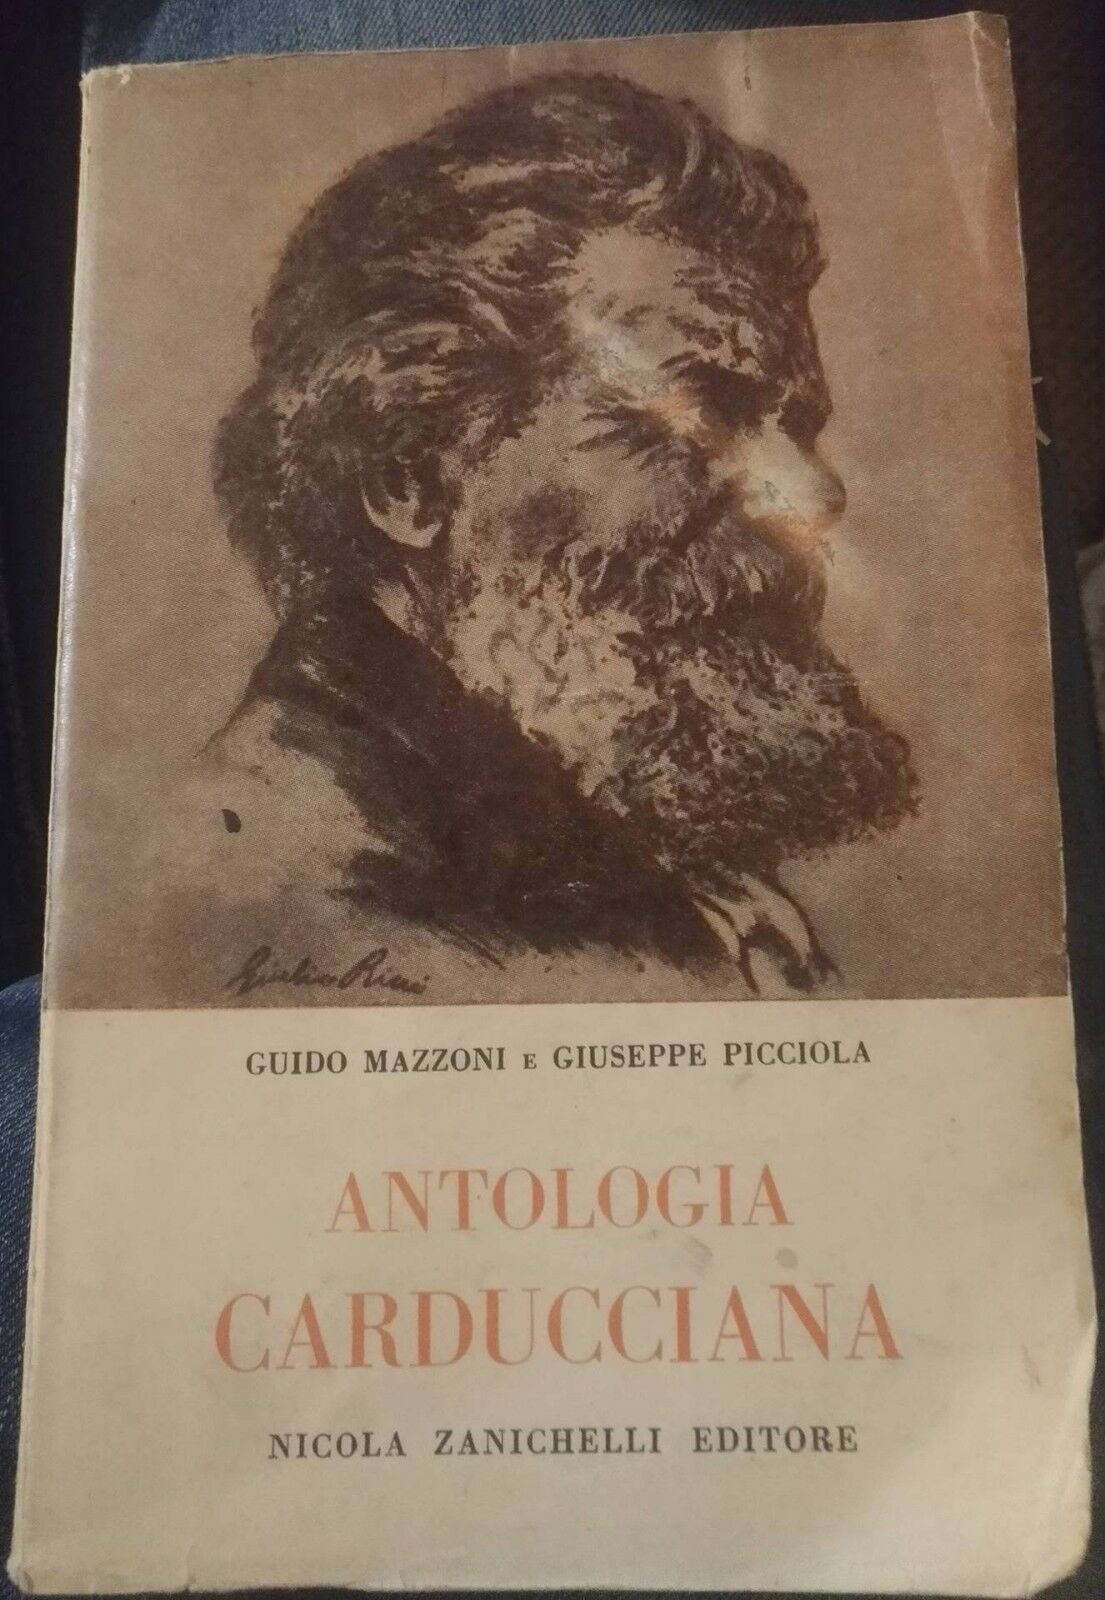 Antologia Carducciana-Mazzoni-Picciola,1955,Zanichelli Editore-S